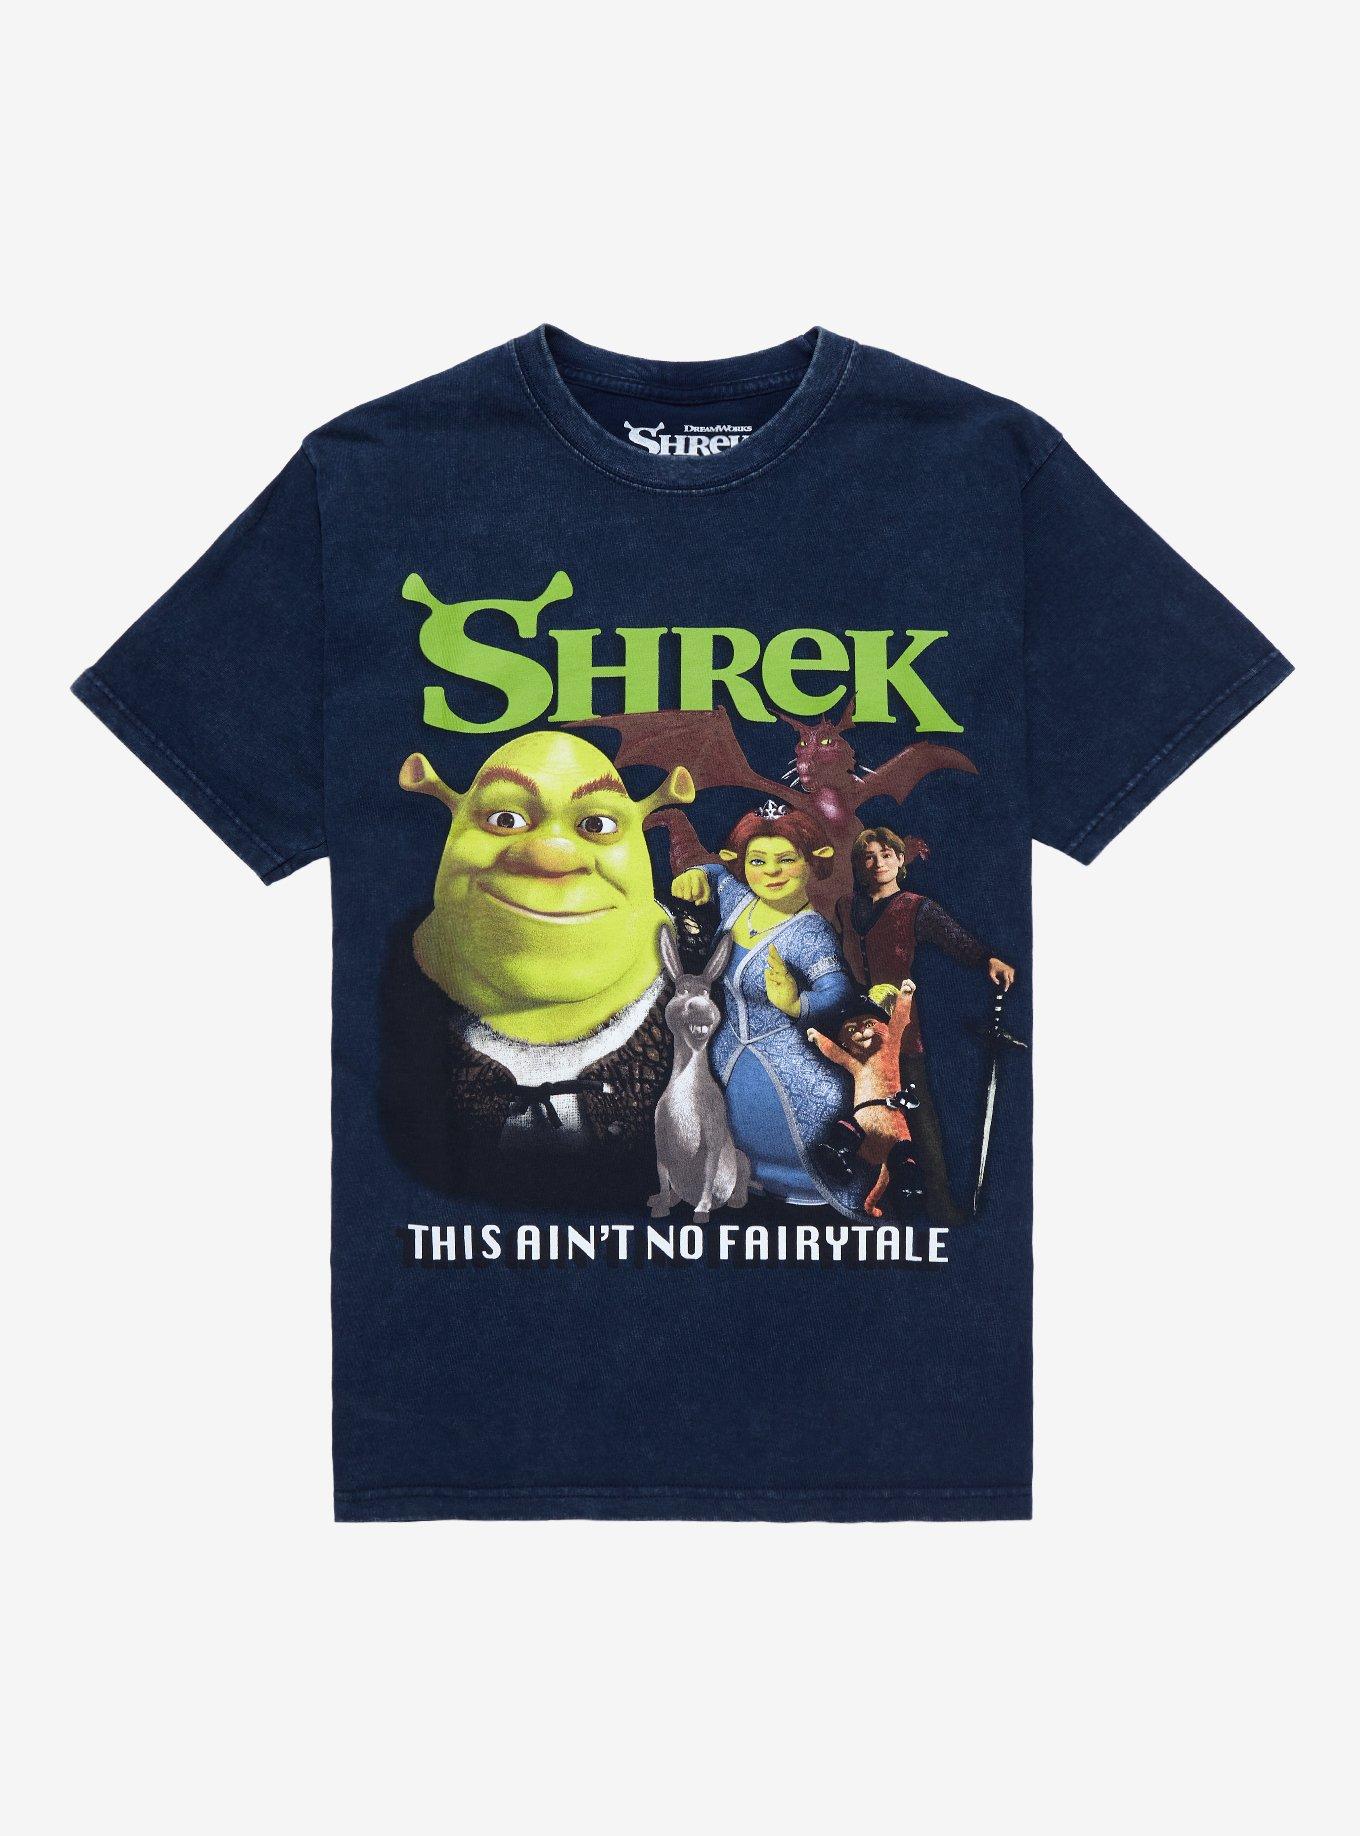 Shrek Group Collage Dark Wash Boyfriend Fit Girls T-Shirt, MULTI, hi-res